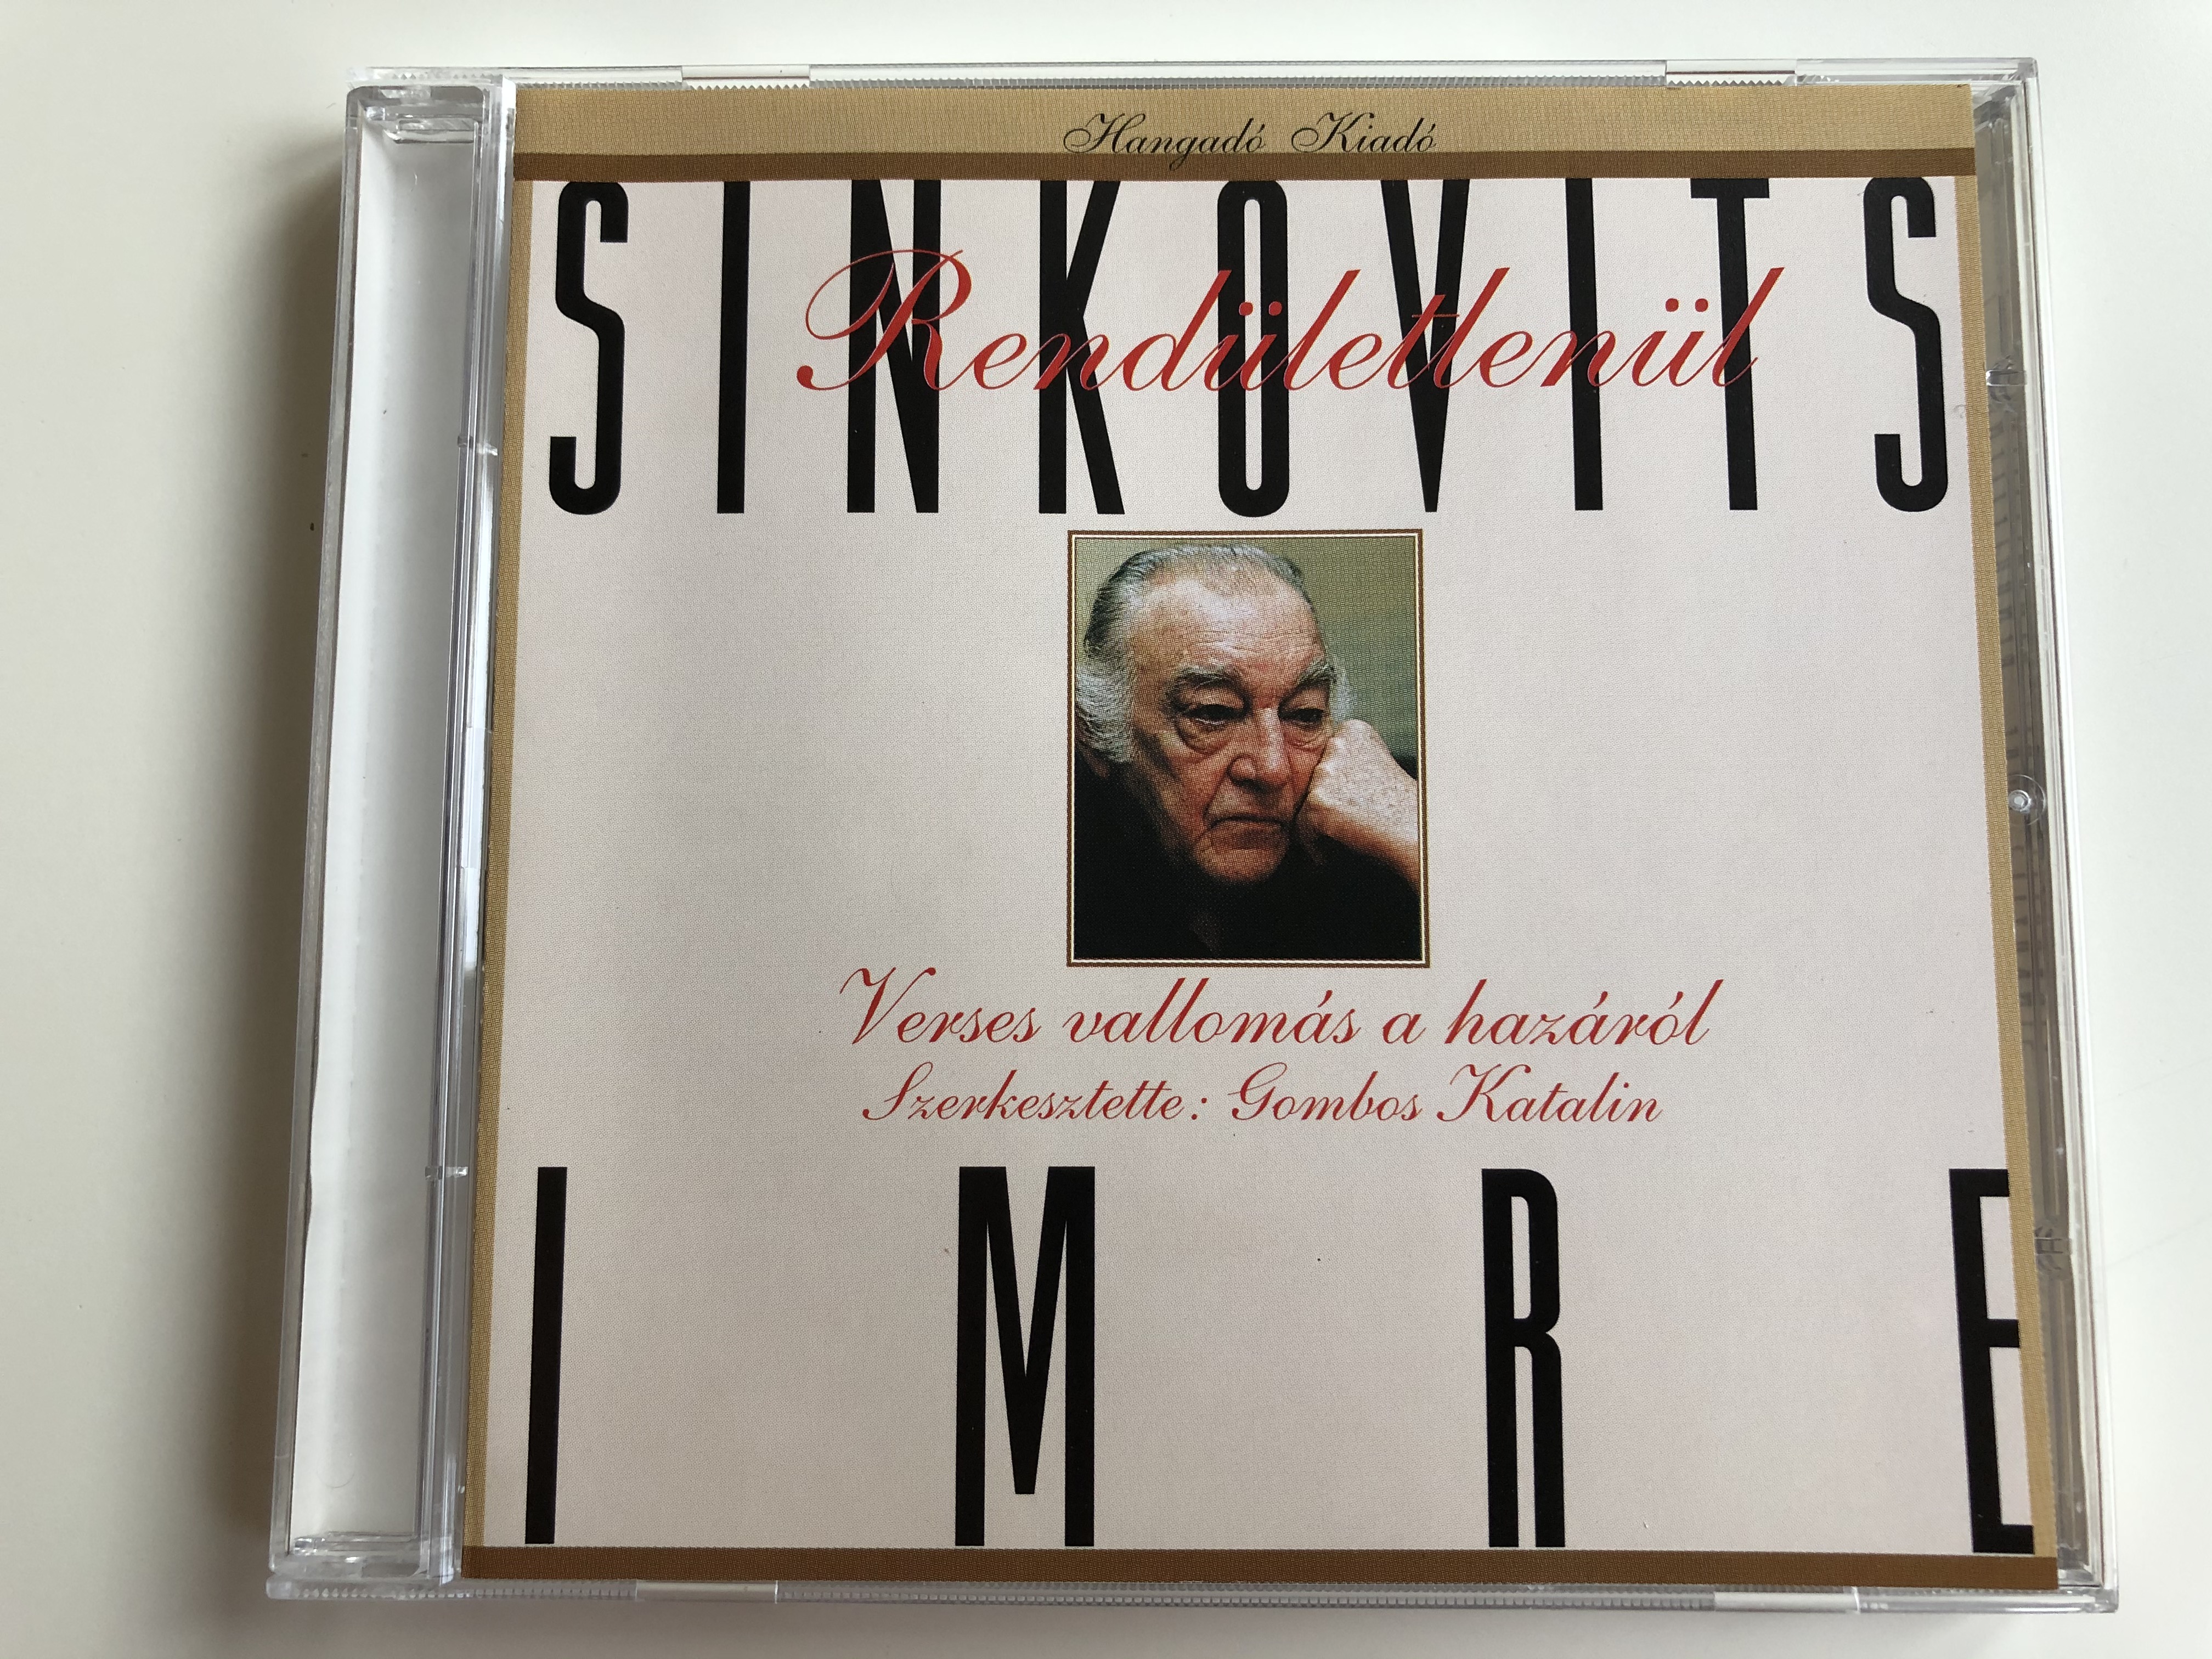 sinkovits-imre-rend-letlen-l-verses-vallom-s-a-haz-r-l-szerkesztette-gombos-katalin-hangad-kiad-audio-cd-1997-ha-cd-30197-1-.jpg